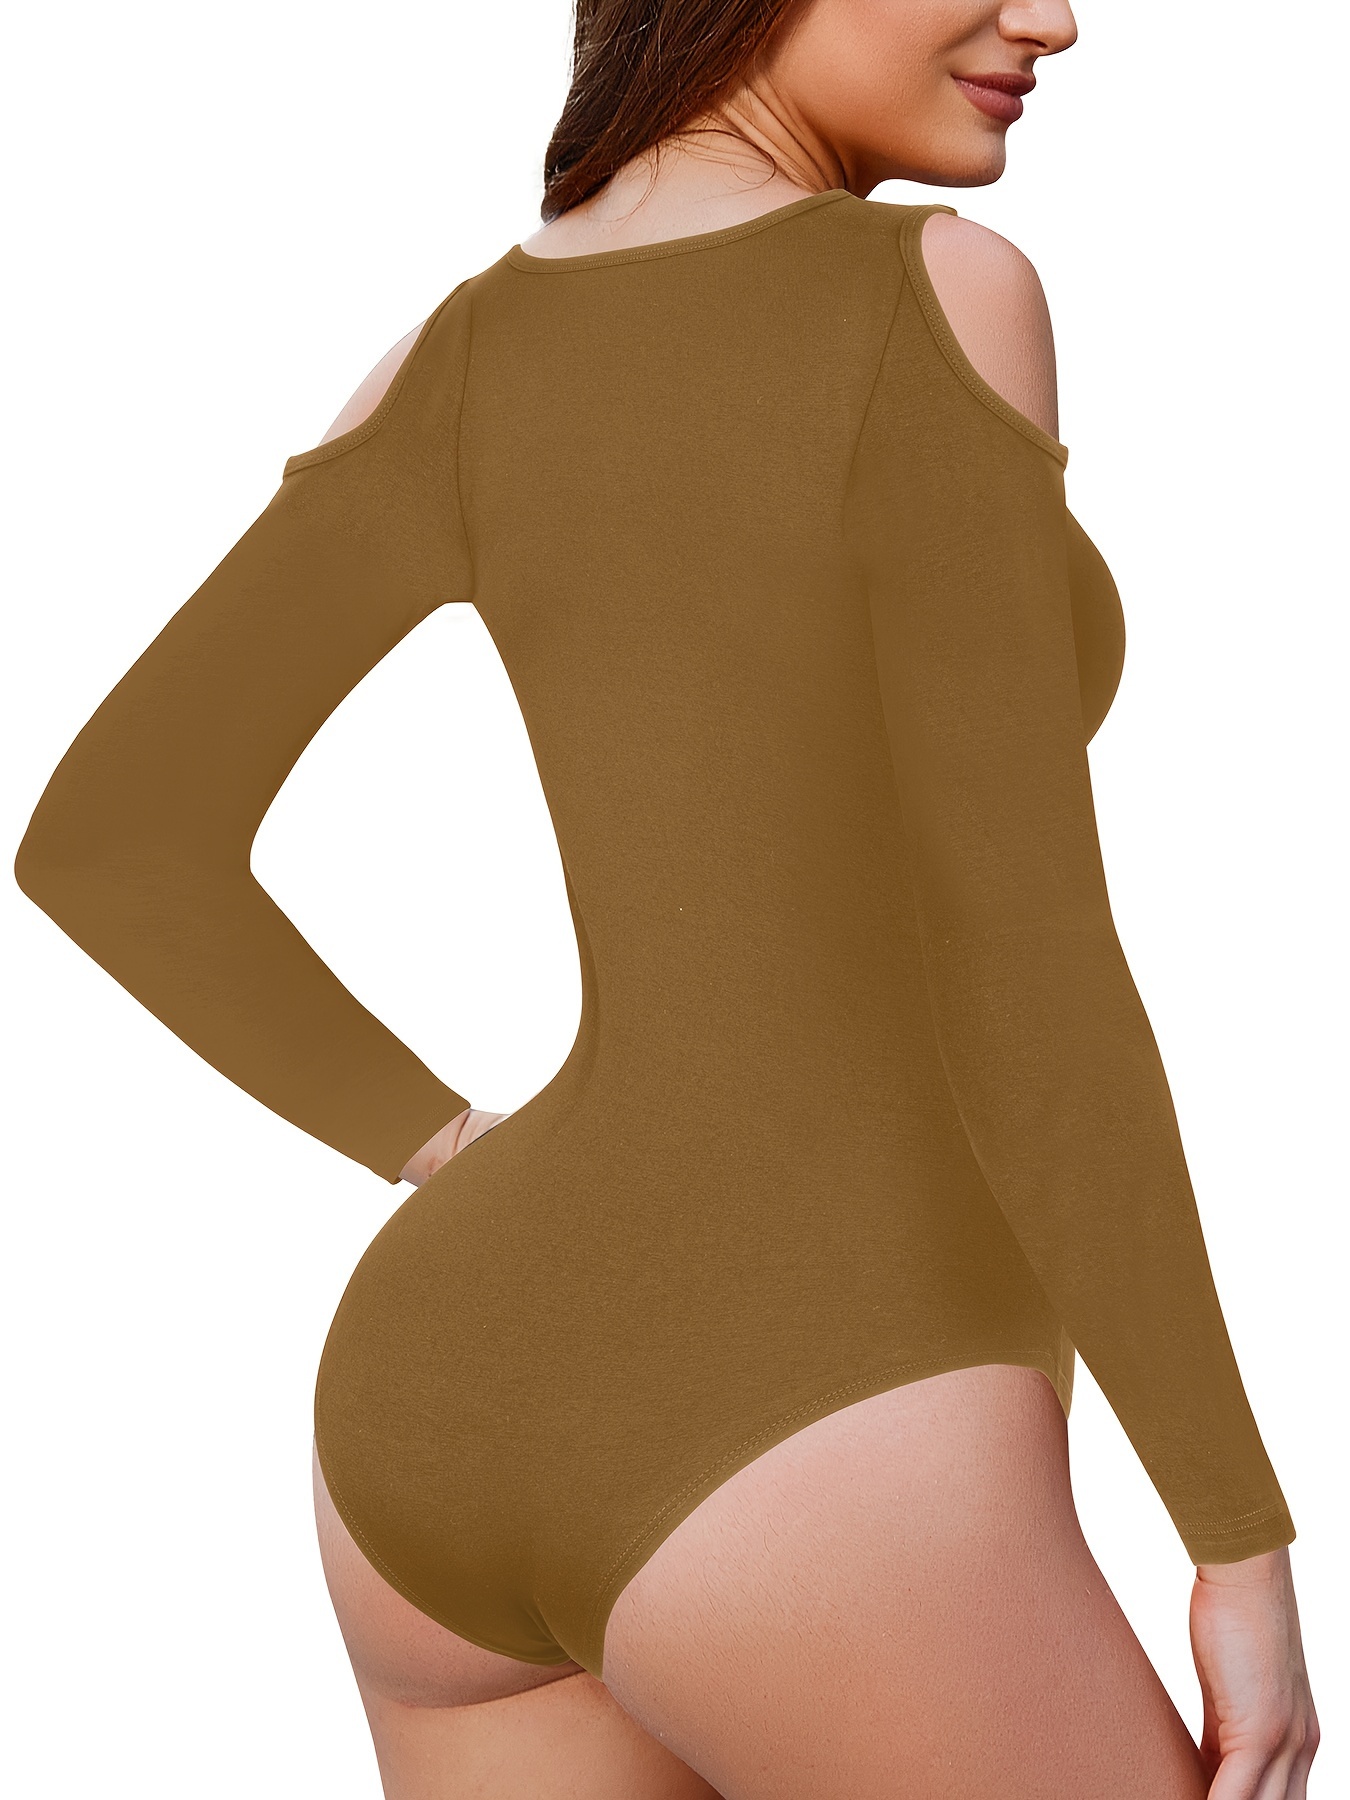 Top Bodysuit modelador tomara que caia colado ao corpo para mulheres,  macacão de manga comprida, body modelador feminino vazado